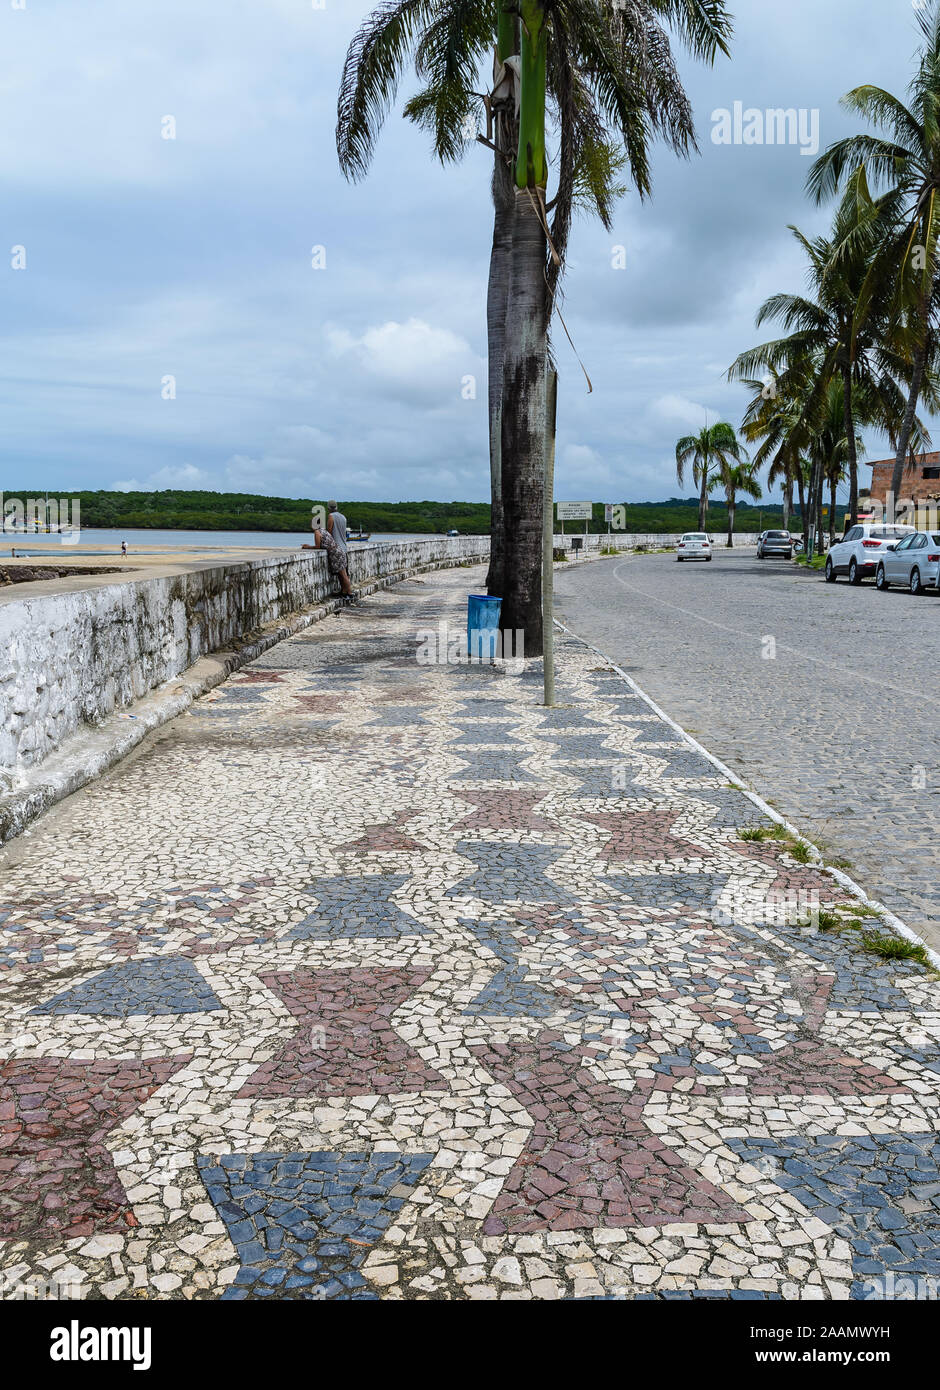 Schönes Mosaik Seite gehen unter Palmen in der Hafenstadt Porto Seguro, Bahia, Brasilien, Südamerika. Stockfoto